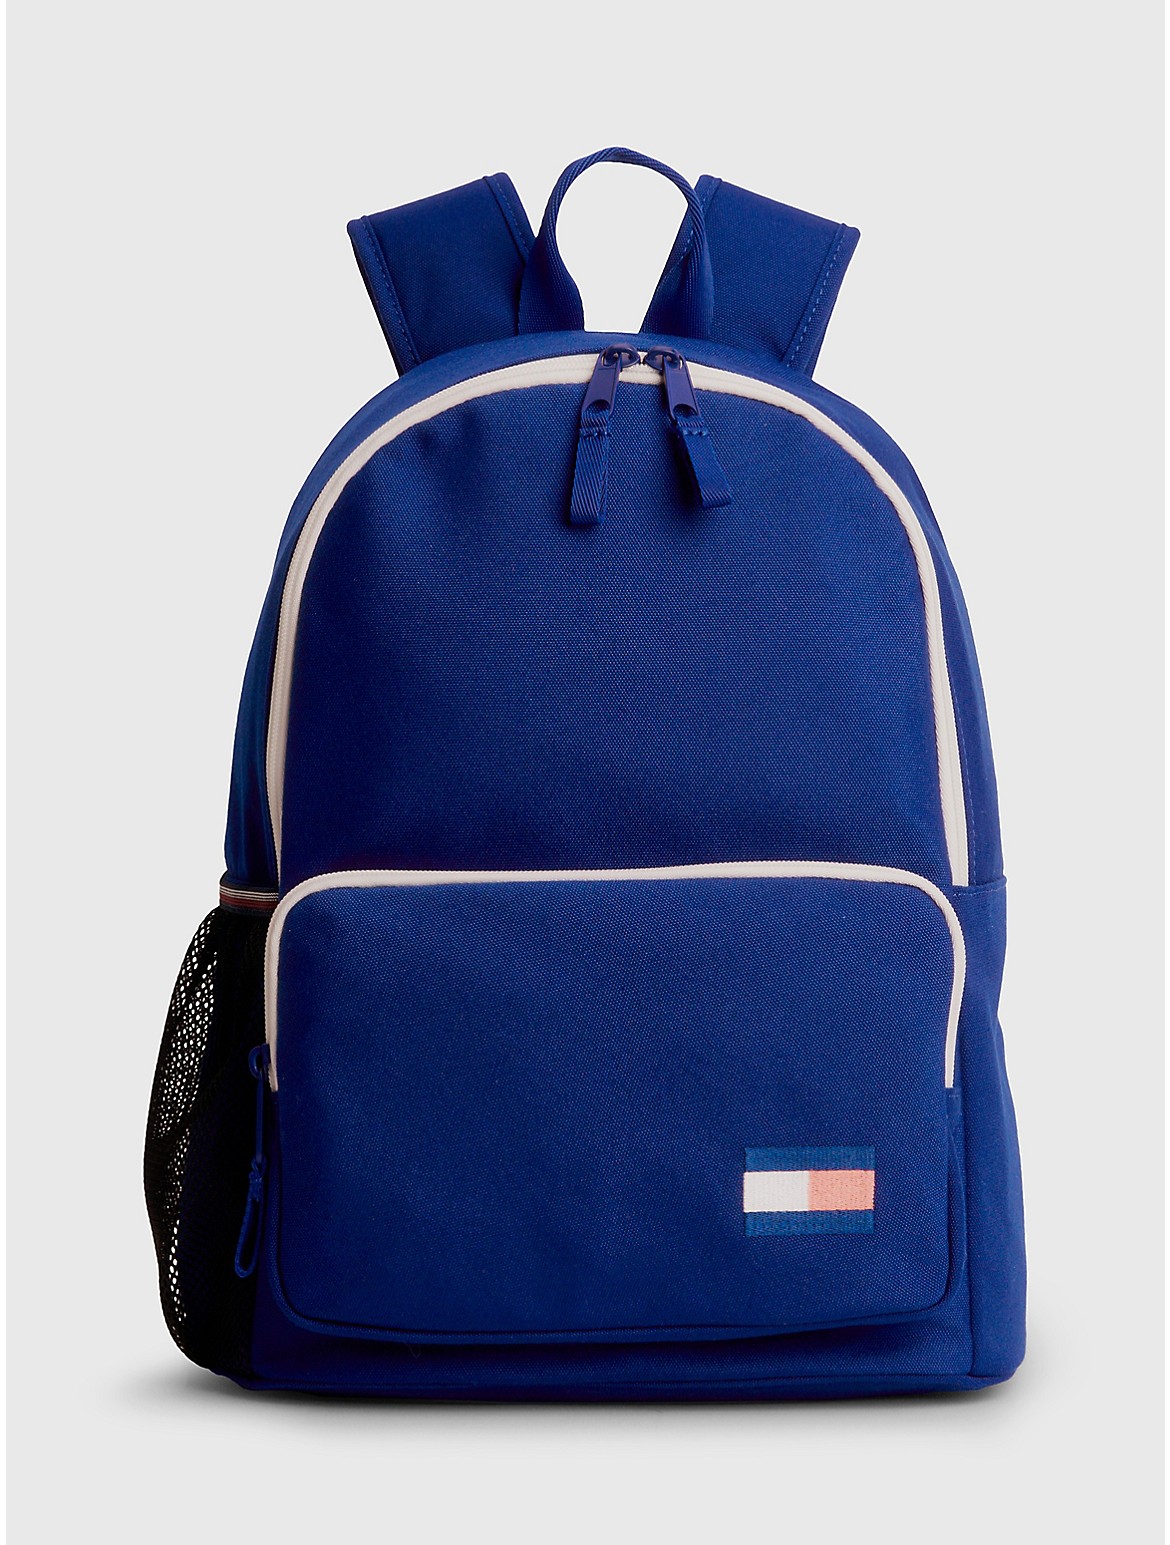 Tommy Hilfiger Kids' Flag Backpack - Blue